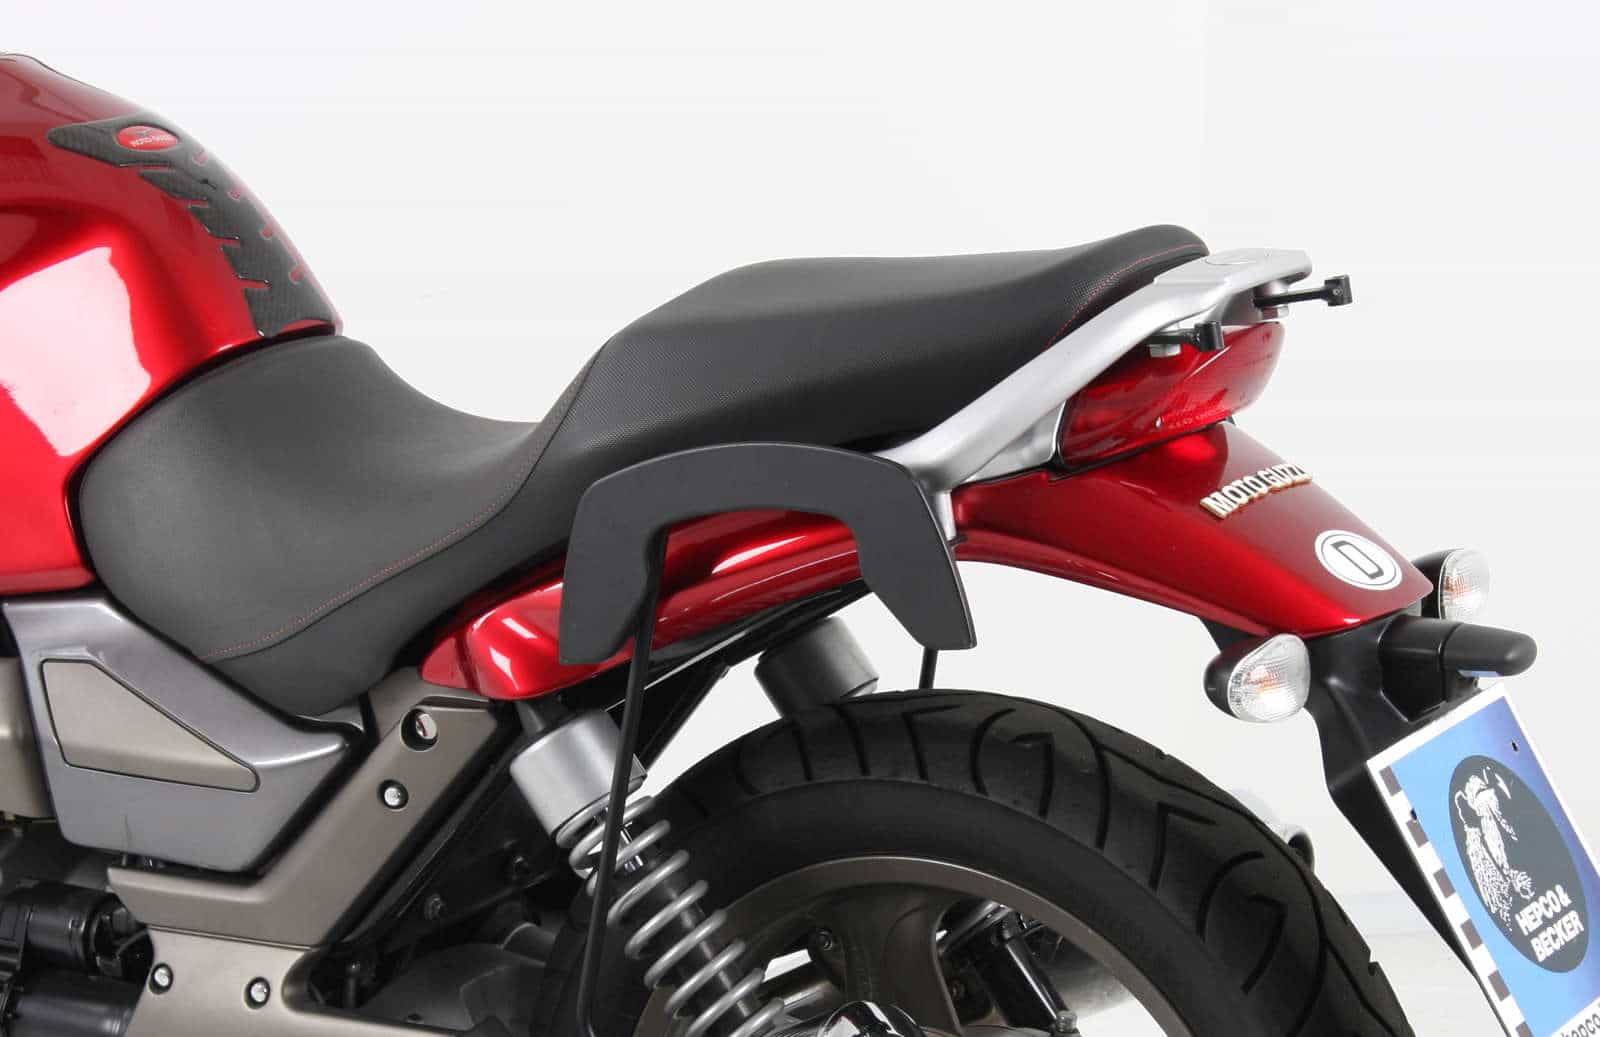 C-Bow sidecarrier for Moto Guzzi Breva V 750 ie (2003-2013)